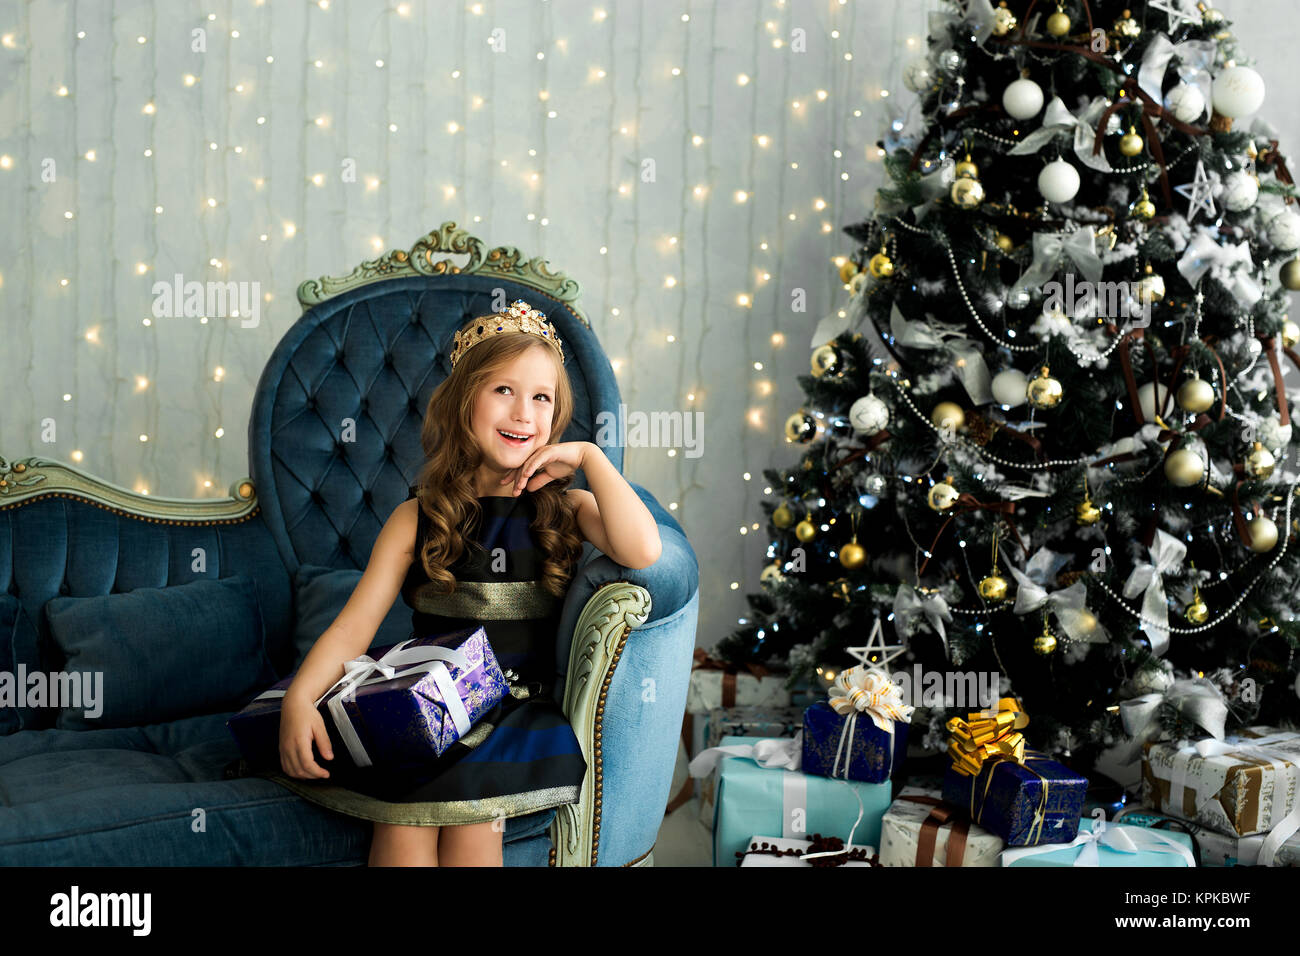 Invierno, gente, navidad, moda y concepto de infancia - niña feliz